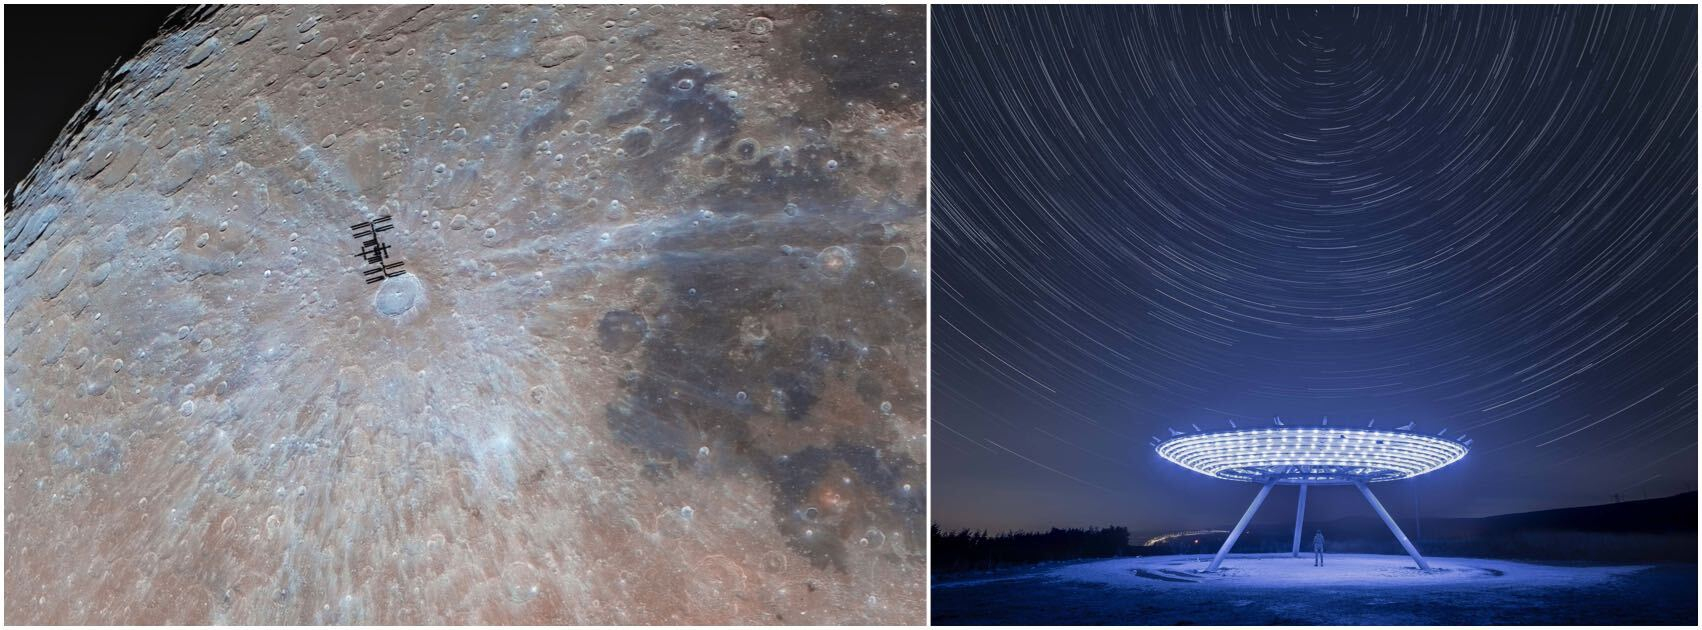 Mėnulio vaizdai su Tarptautine kosmine stotimi, pravažiuojančia prieš jį, ir mėlynu radarą primenančiu lėkštuku po dangumi, pilnu žvaigždžių pėdsakų.